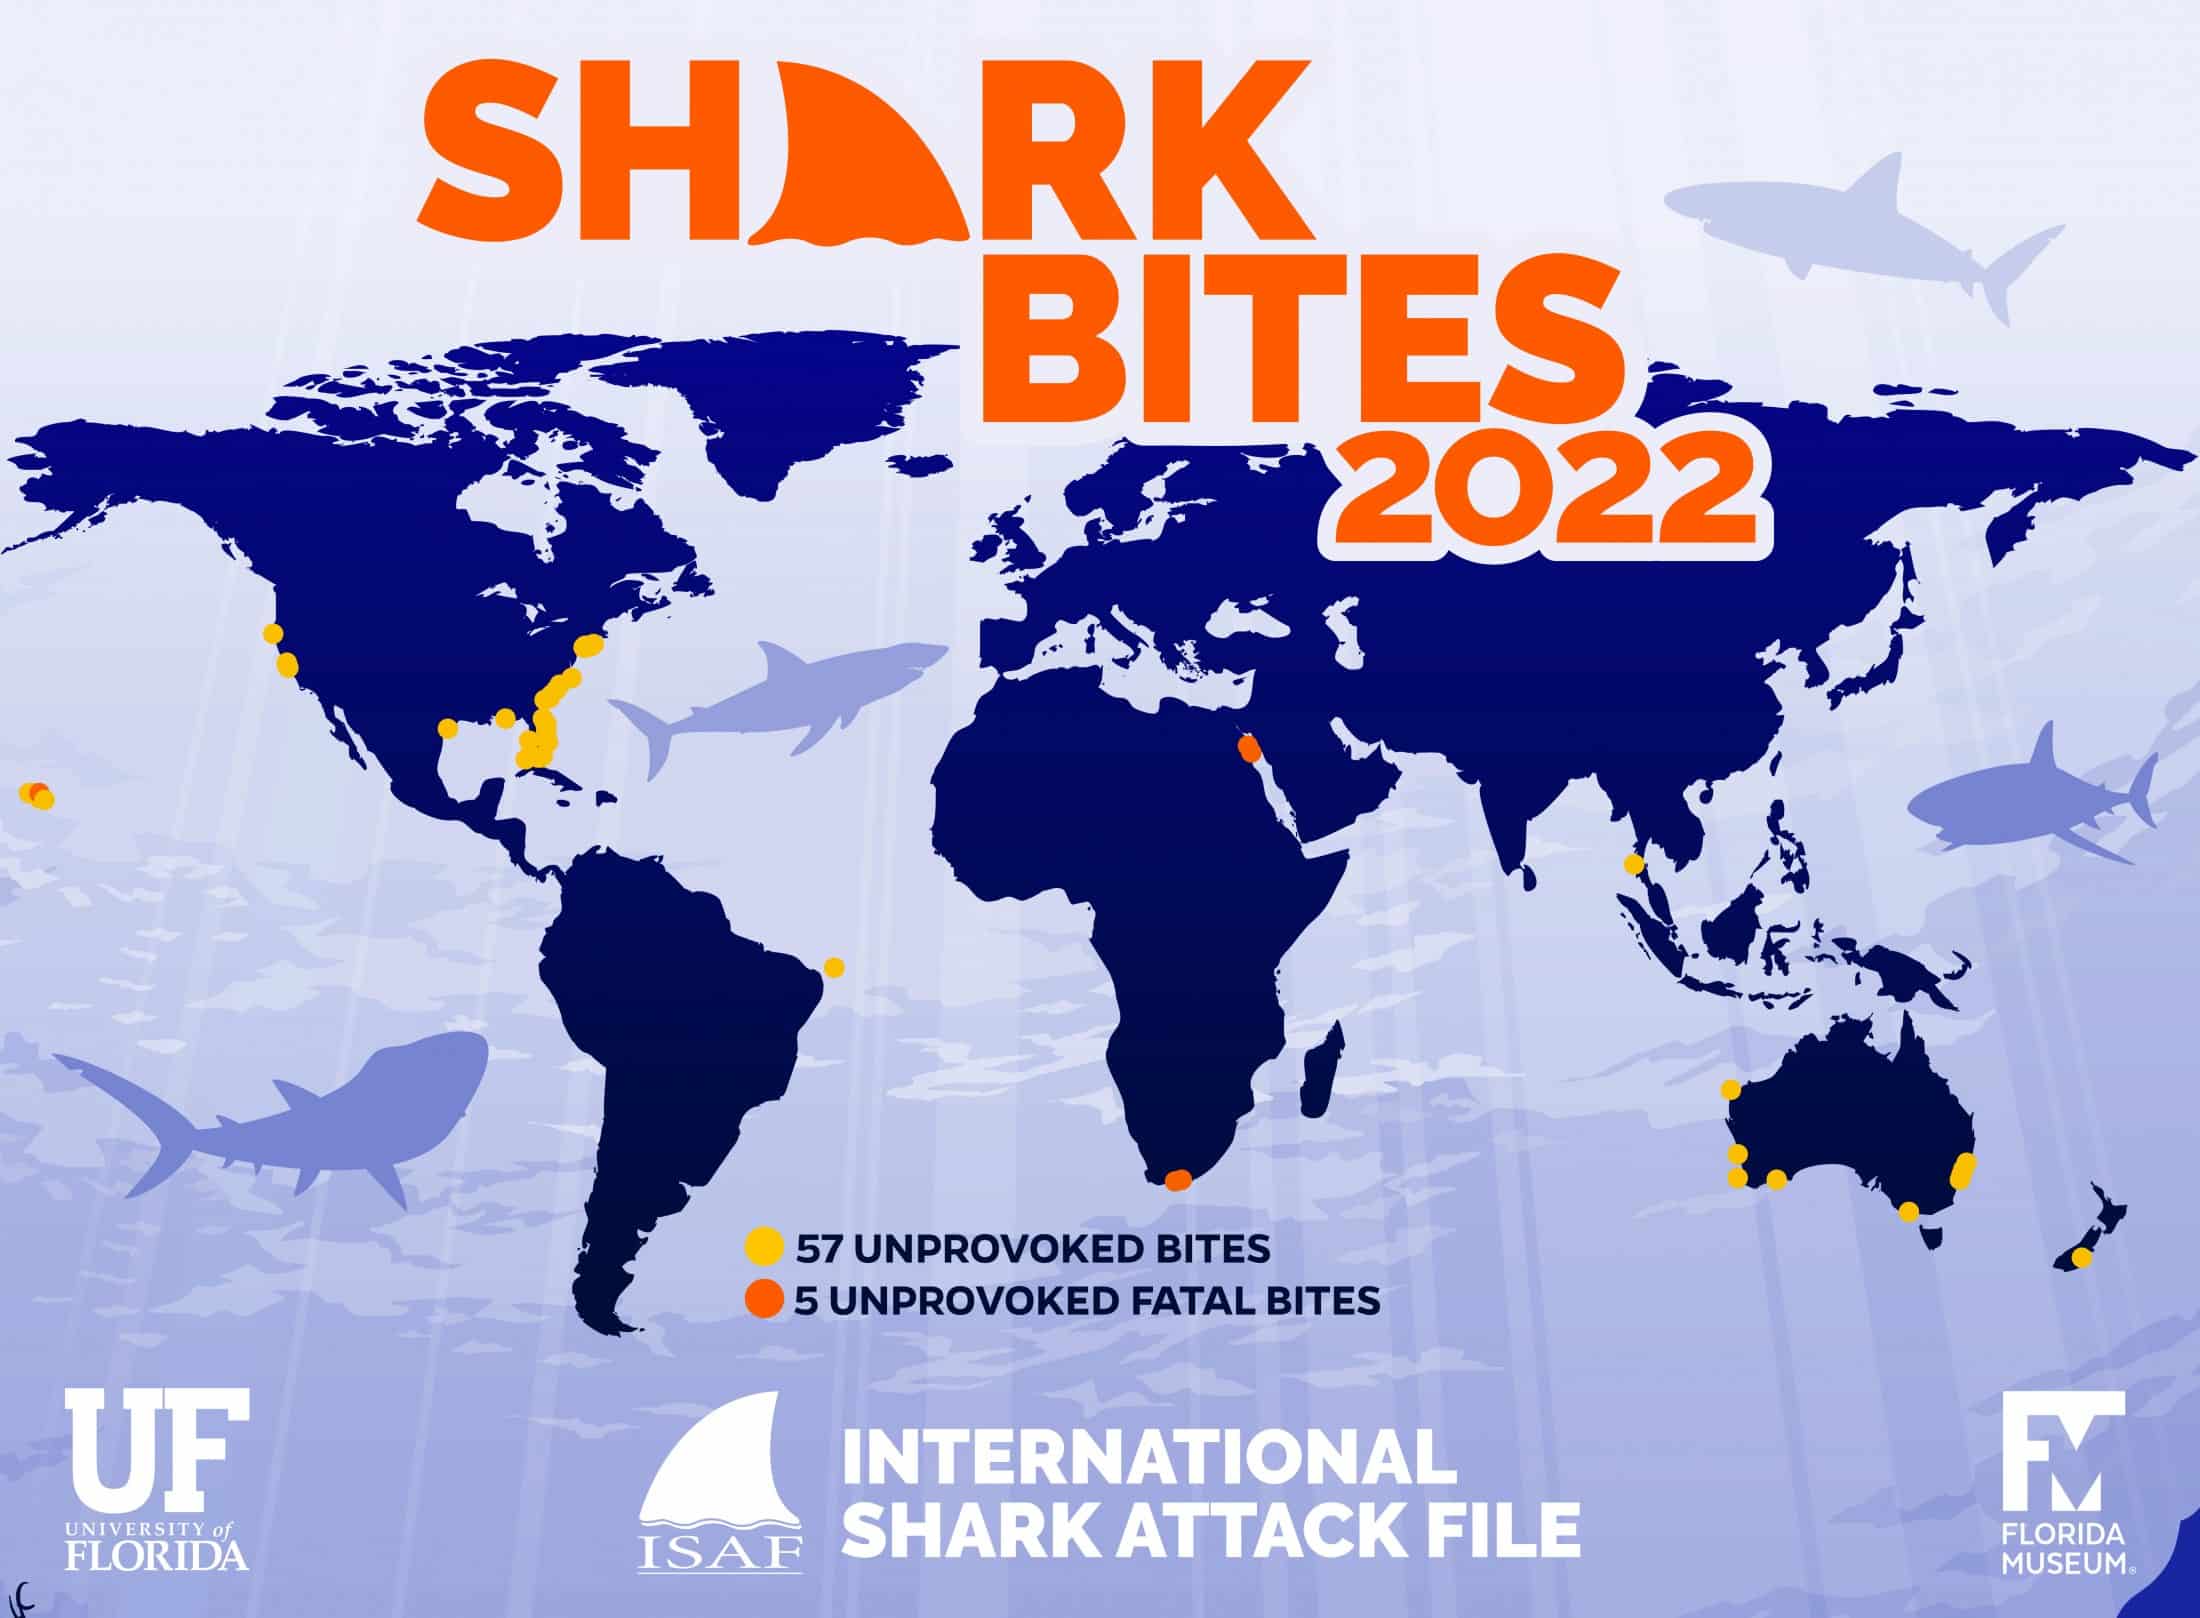 International Shark Attack File: 2022 Summary